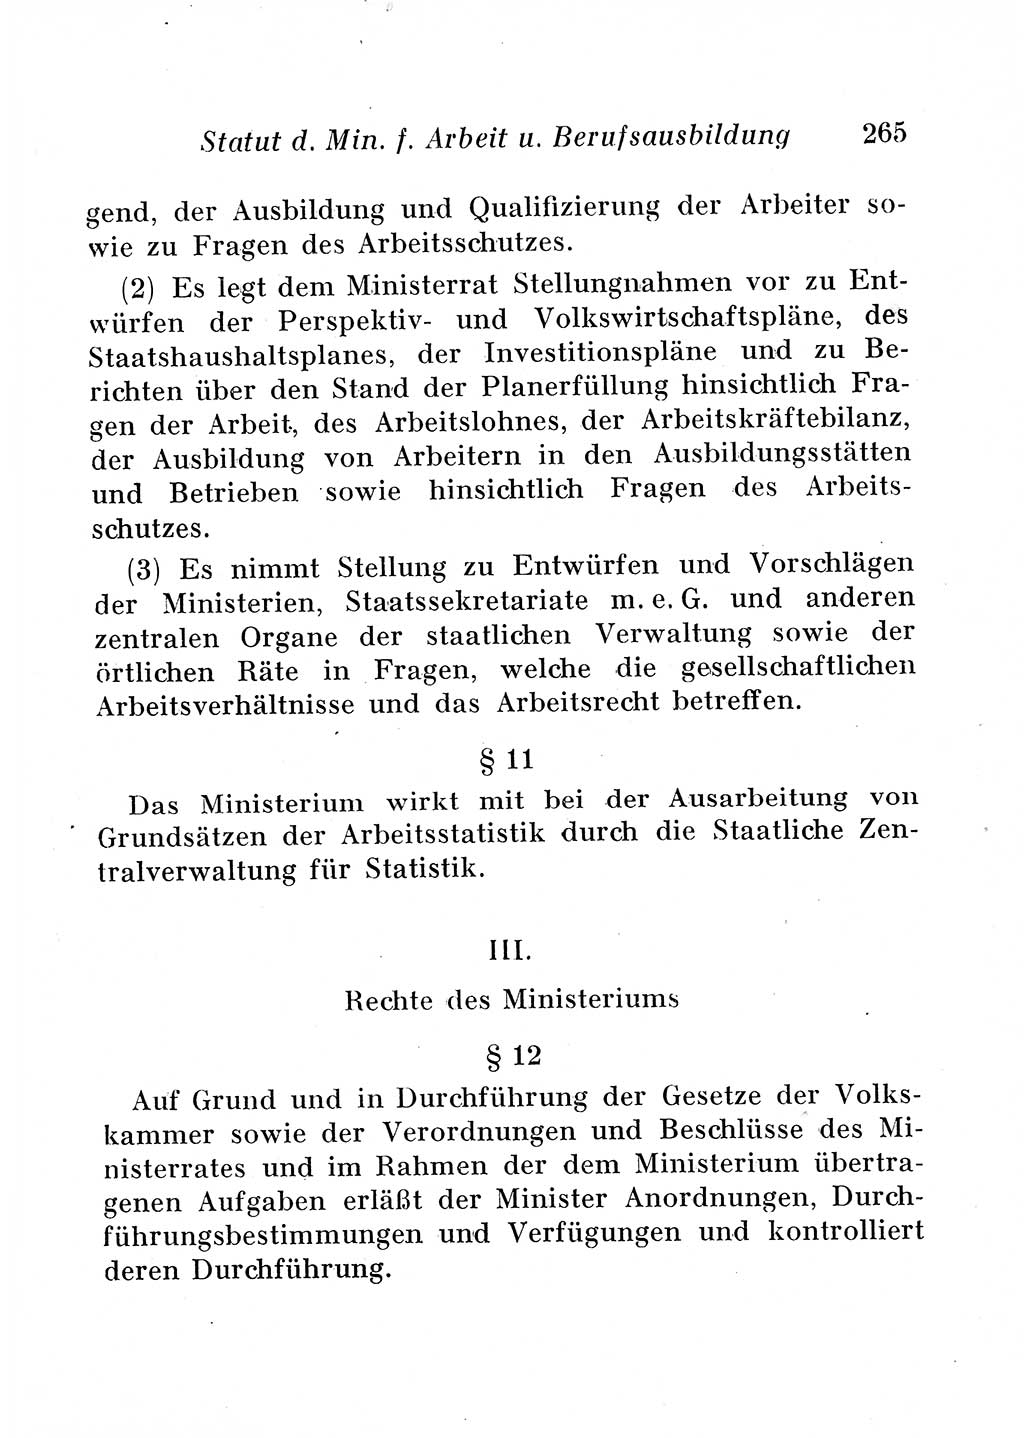 Staats- und verwaltungsrechtliche Gesetze der Deutschen Demokratischen Republik (DDR) 1958, Seite 265 (StVerwR Ges. DDR 1958, S. 265)